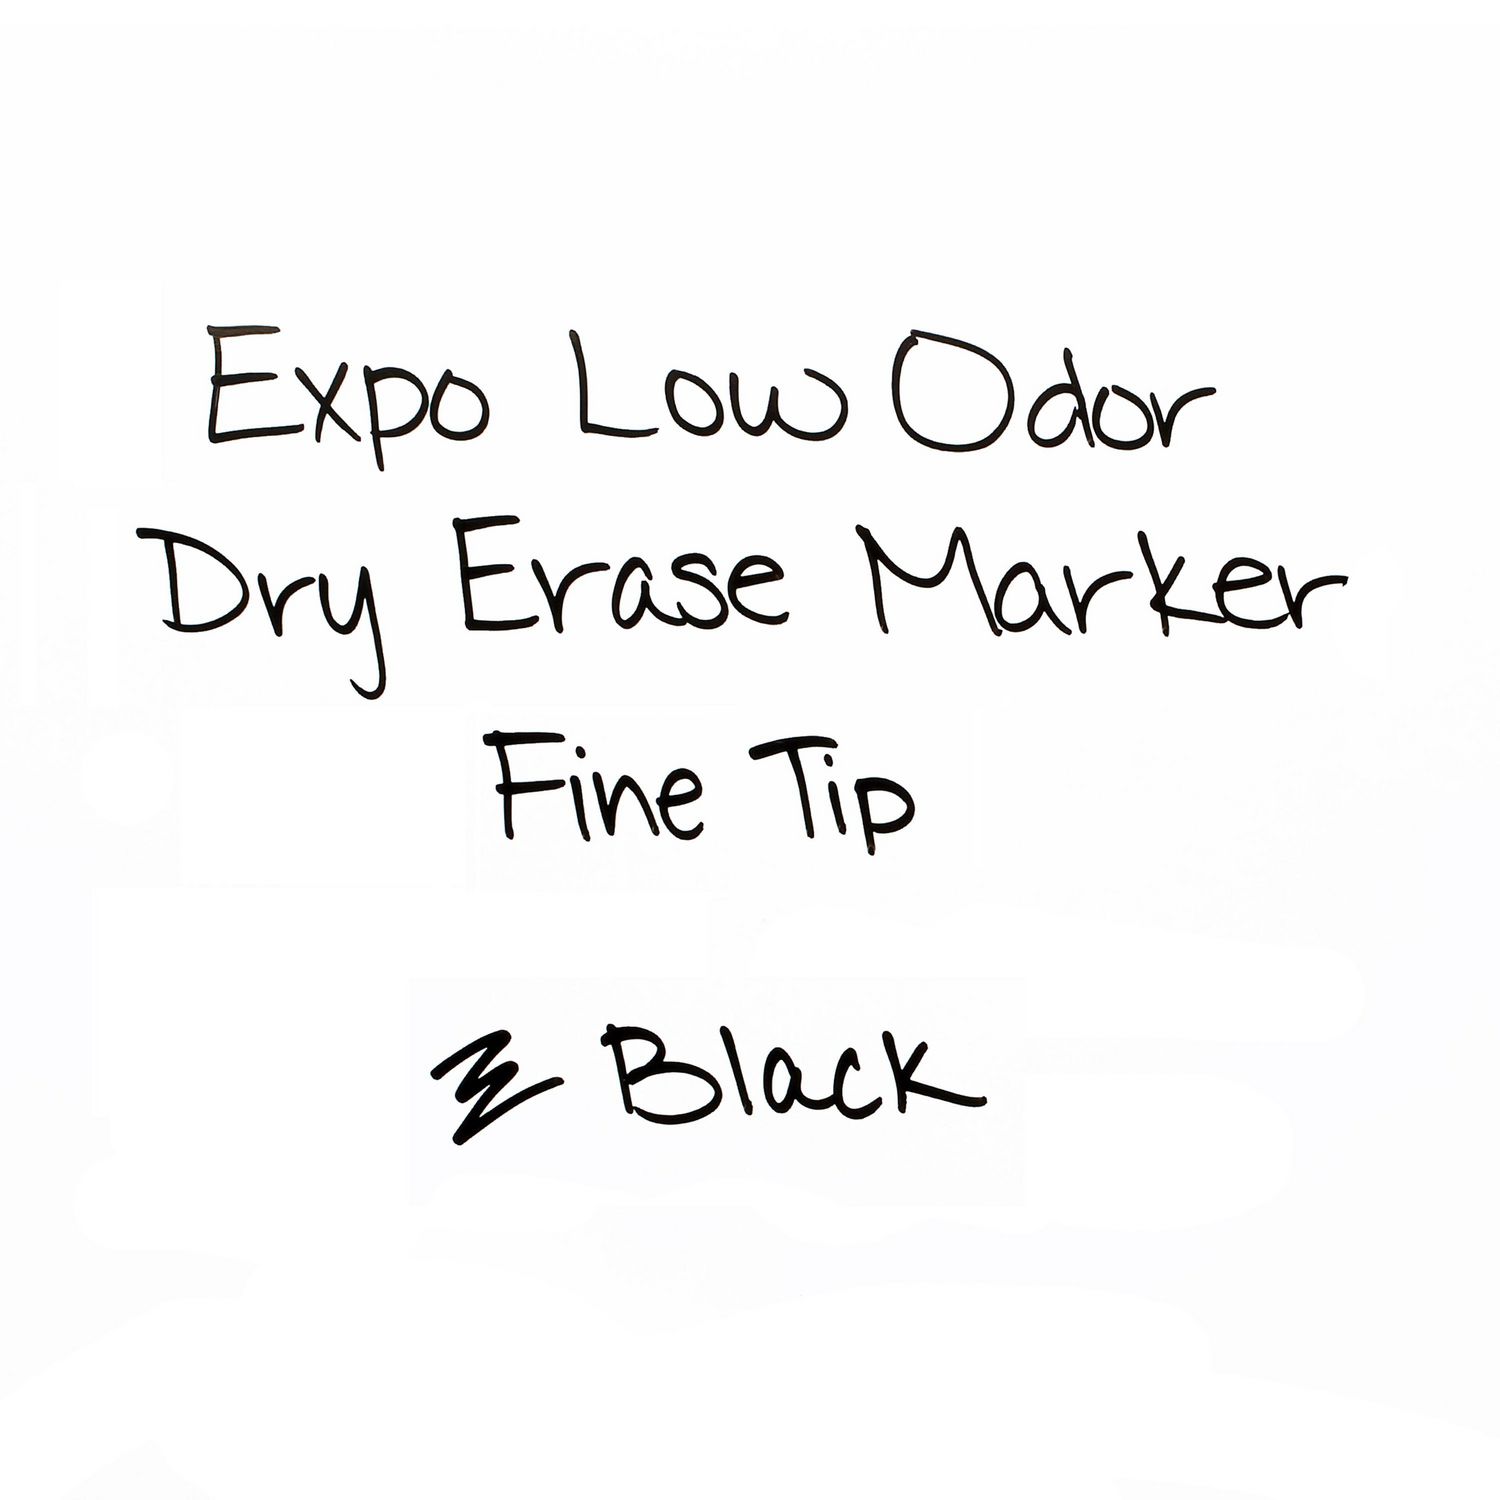 Expo Marqueurs à effacement sec à faible odeur, pointe fine, noir, Paq. de  4 Marqueurs pour tableau blanc 